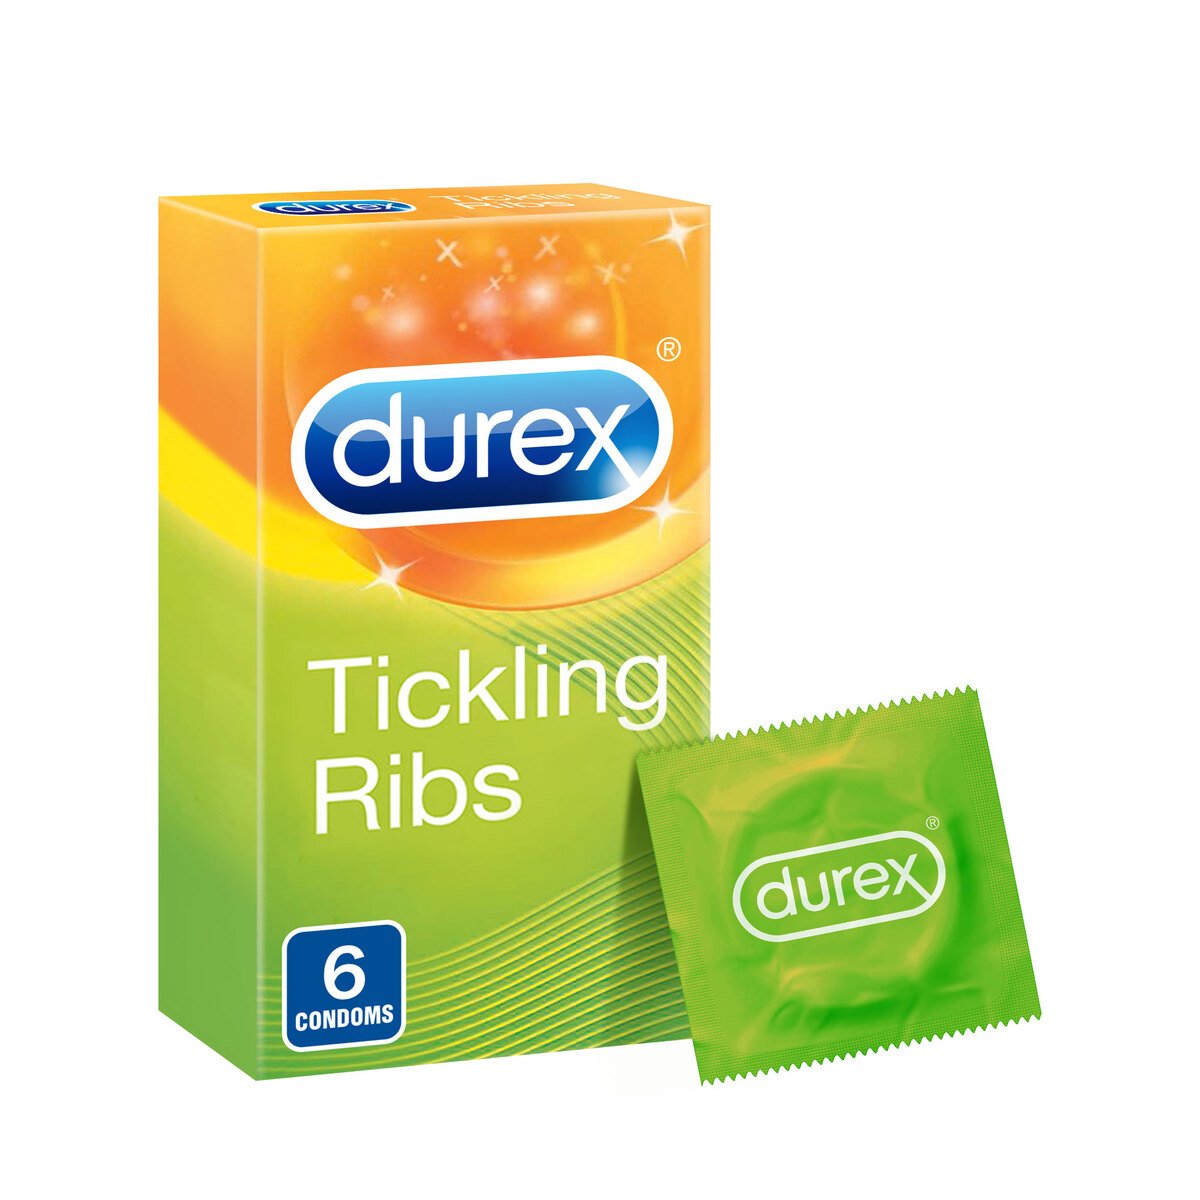 Durex Condoms Tickling Ribs 6 pcs